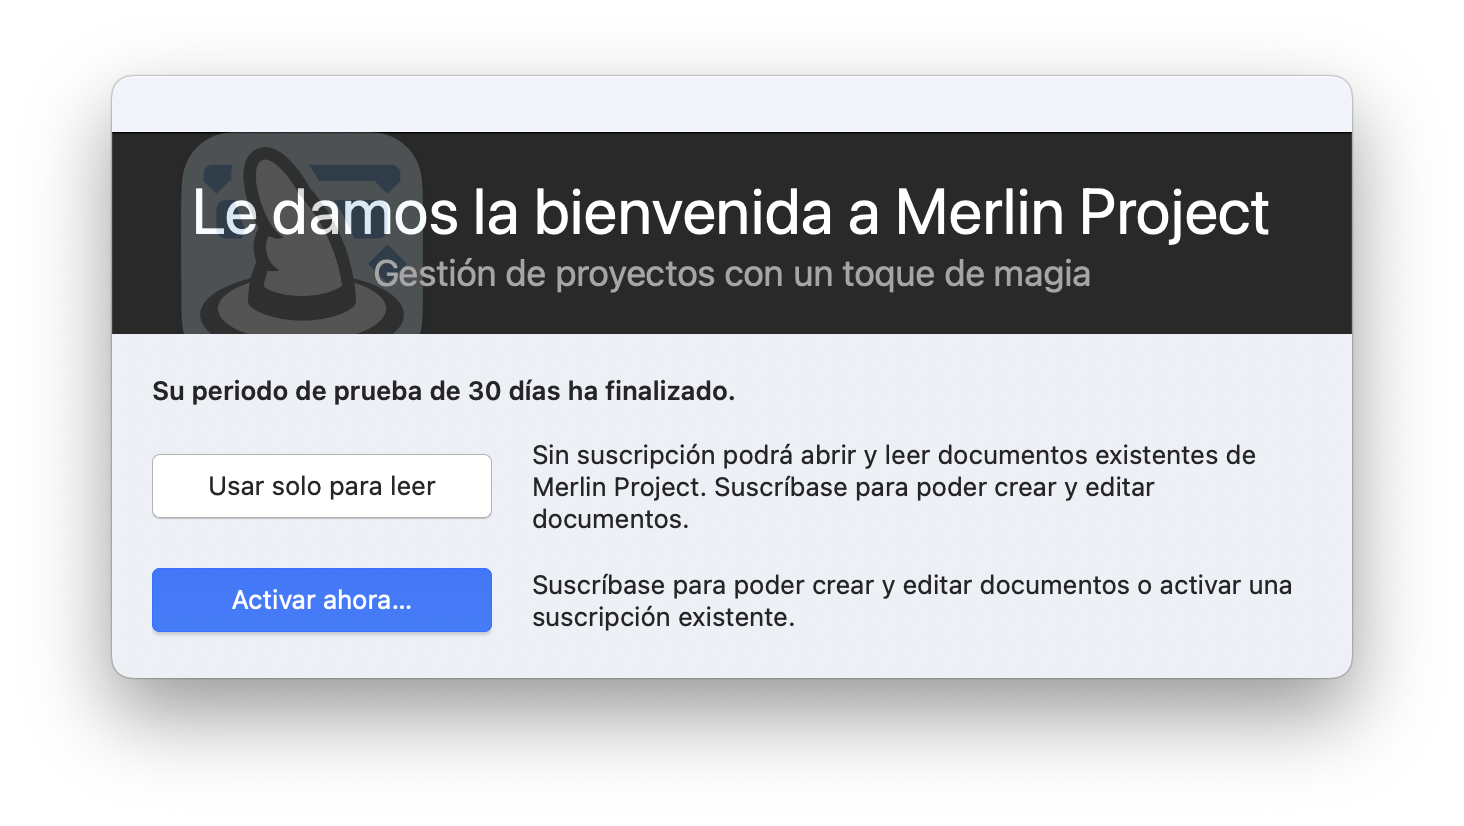 Visor gratuito para los documentos de Merlin Project